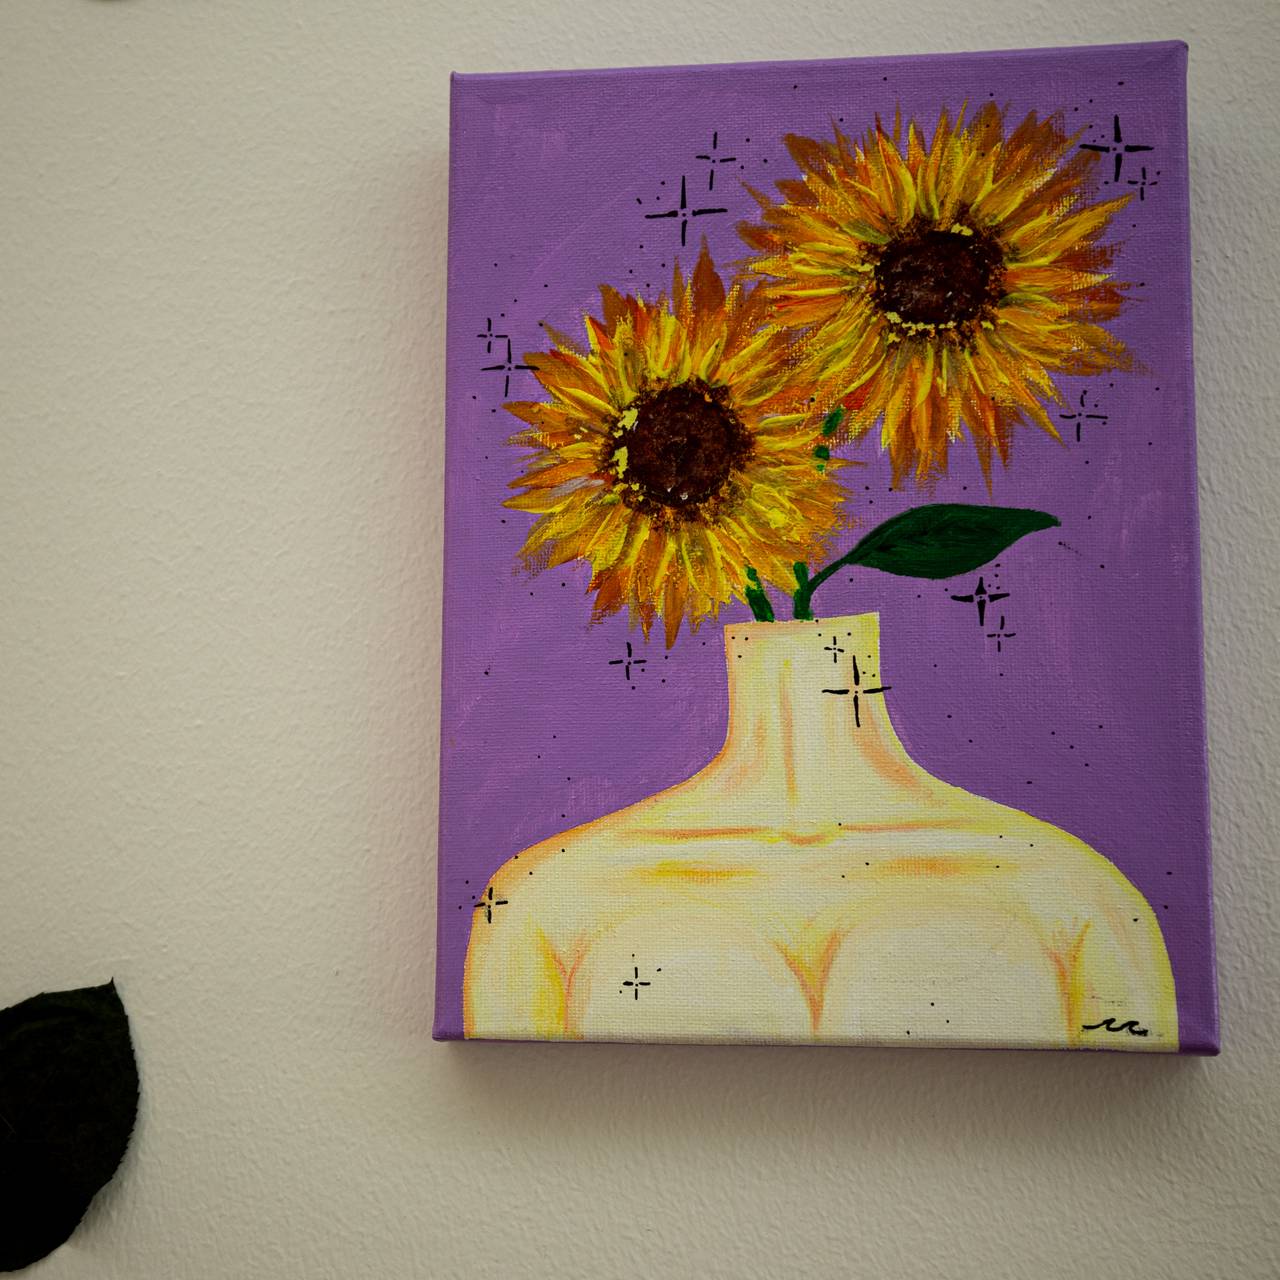 Maleri av en overkropp, med solsikkeblomster som vokser ut av nakken i steden for et ansikt.